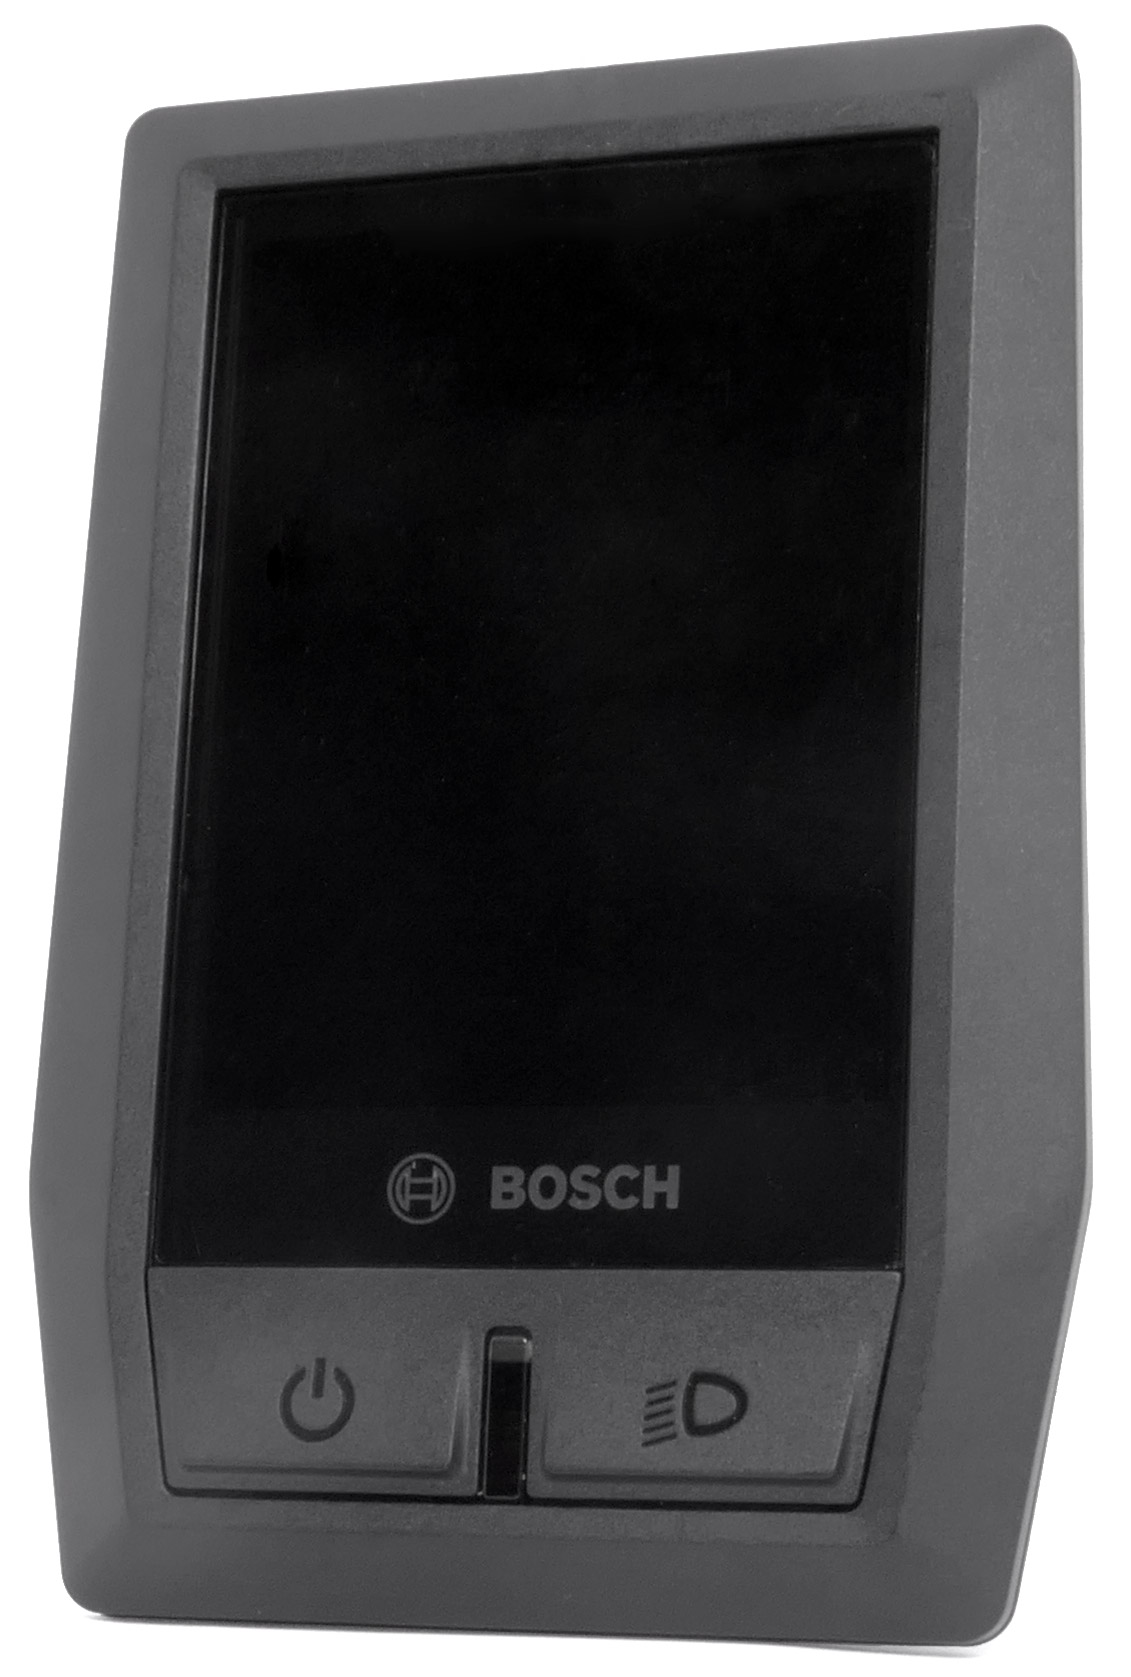 Bosch Kiox E-Bike Bordcomputer